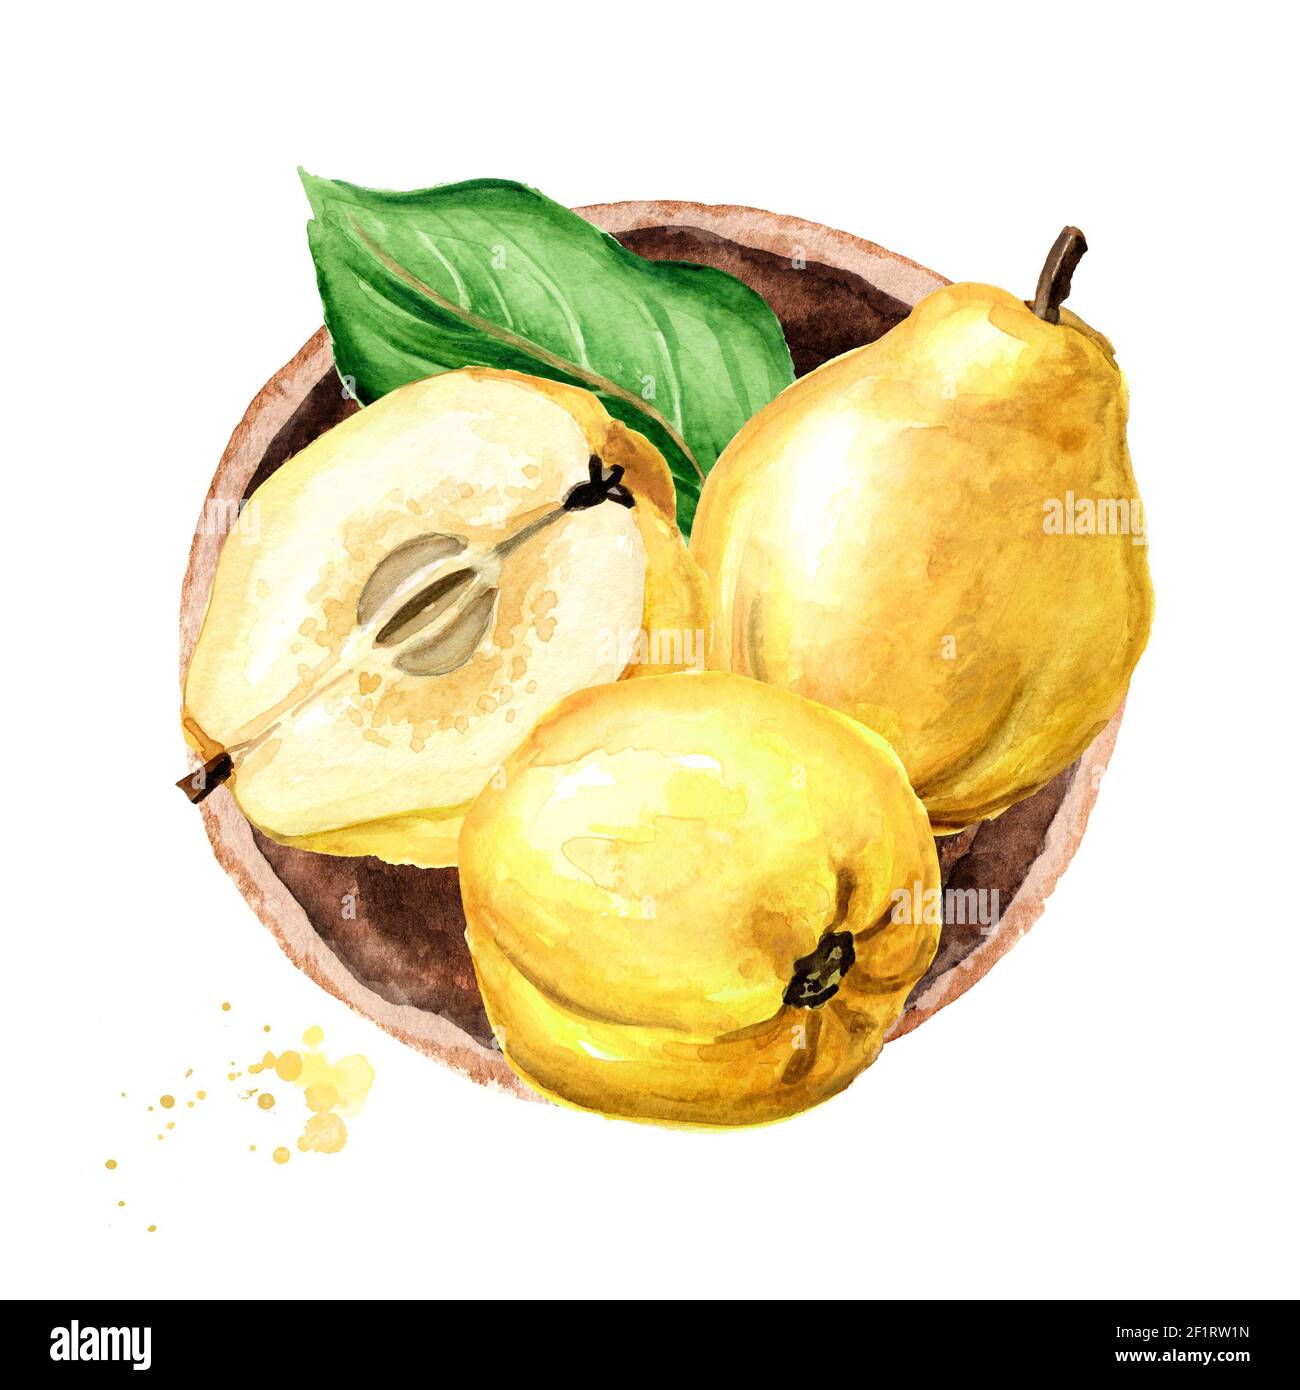 Schale mit frischen rot-gelben Quitten-Früchten, Draufsicht.  Handgezeichnete Aquarellillustration, isoliert auf weißem Hintergrund  Stockfotografie - Alamy